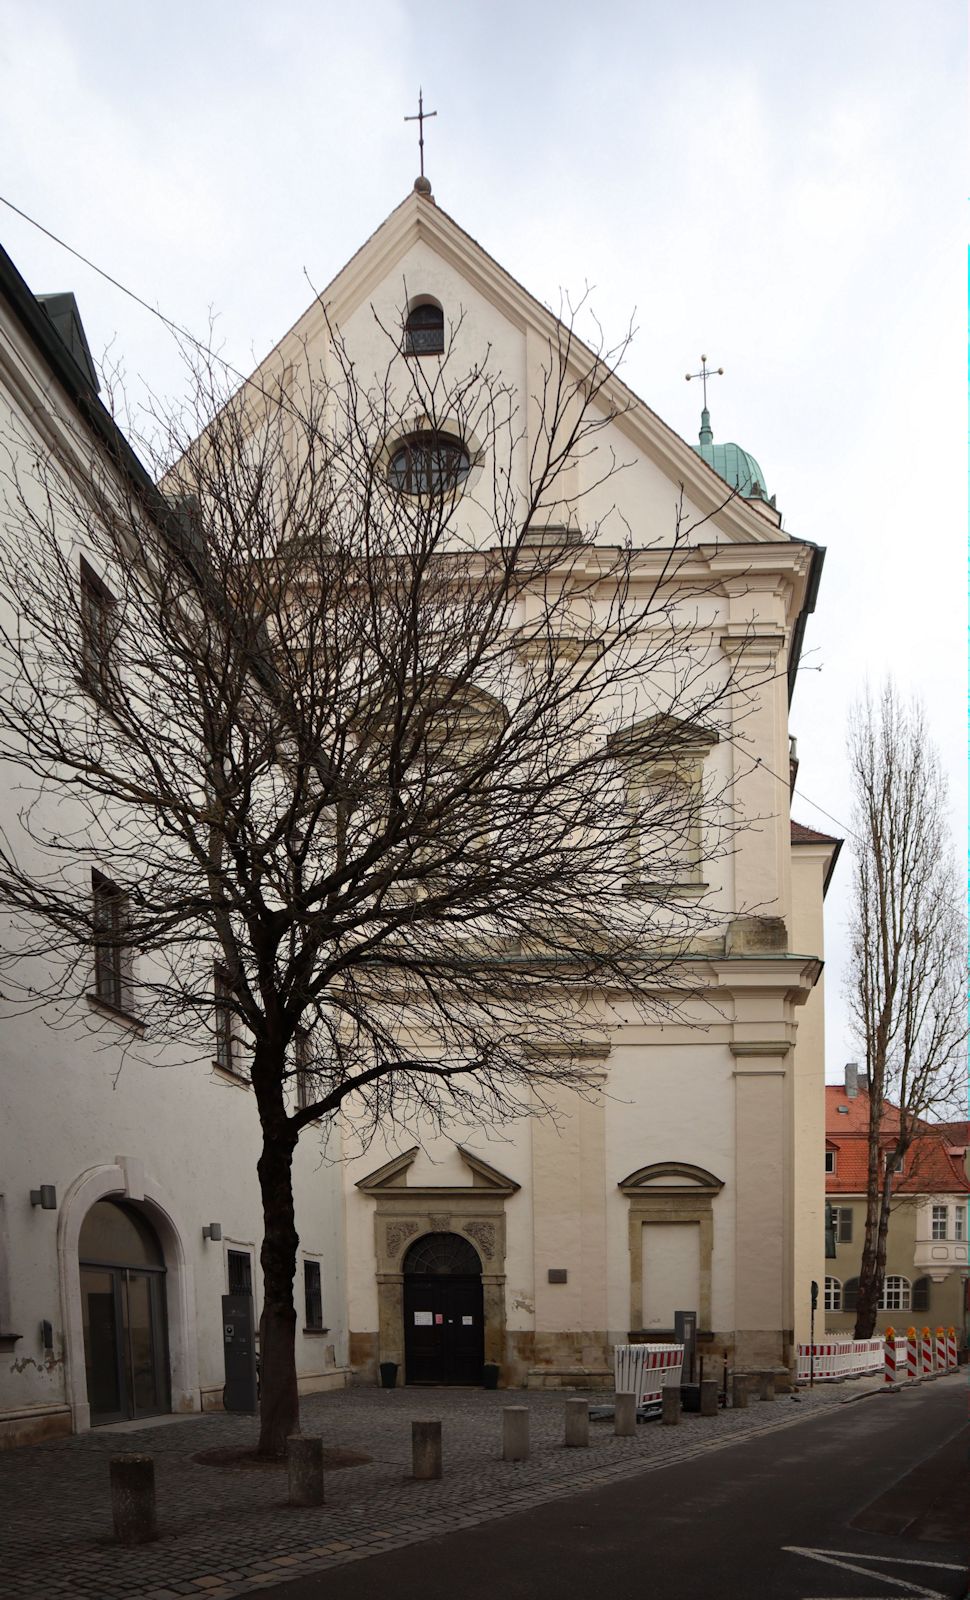 Kirche St. Magn des ehemaligen Augustinerchorherren-Klosters in Stadtamhof